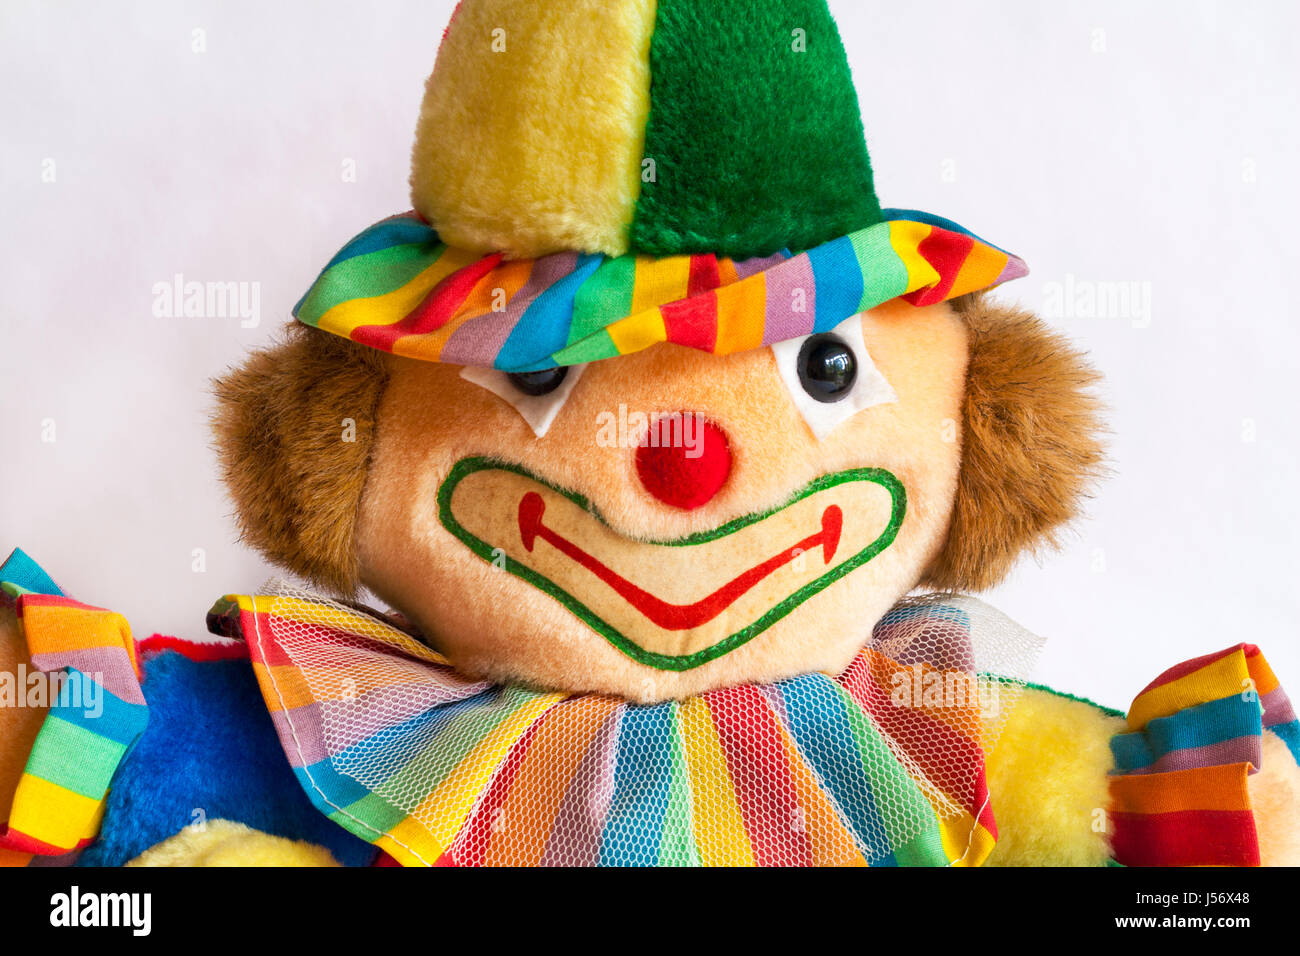 Clown weichen Kuscheltier Stockfotografie - Alamy